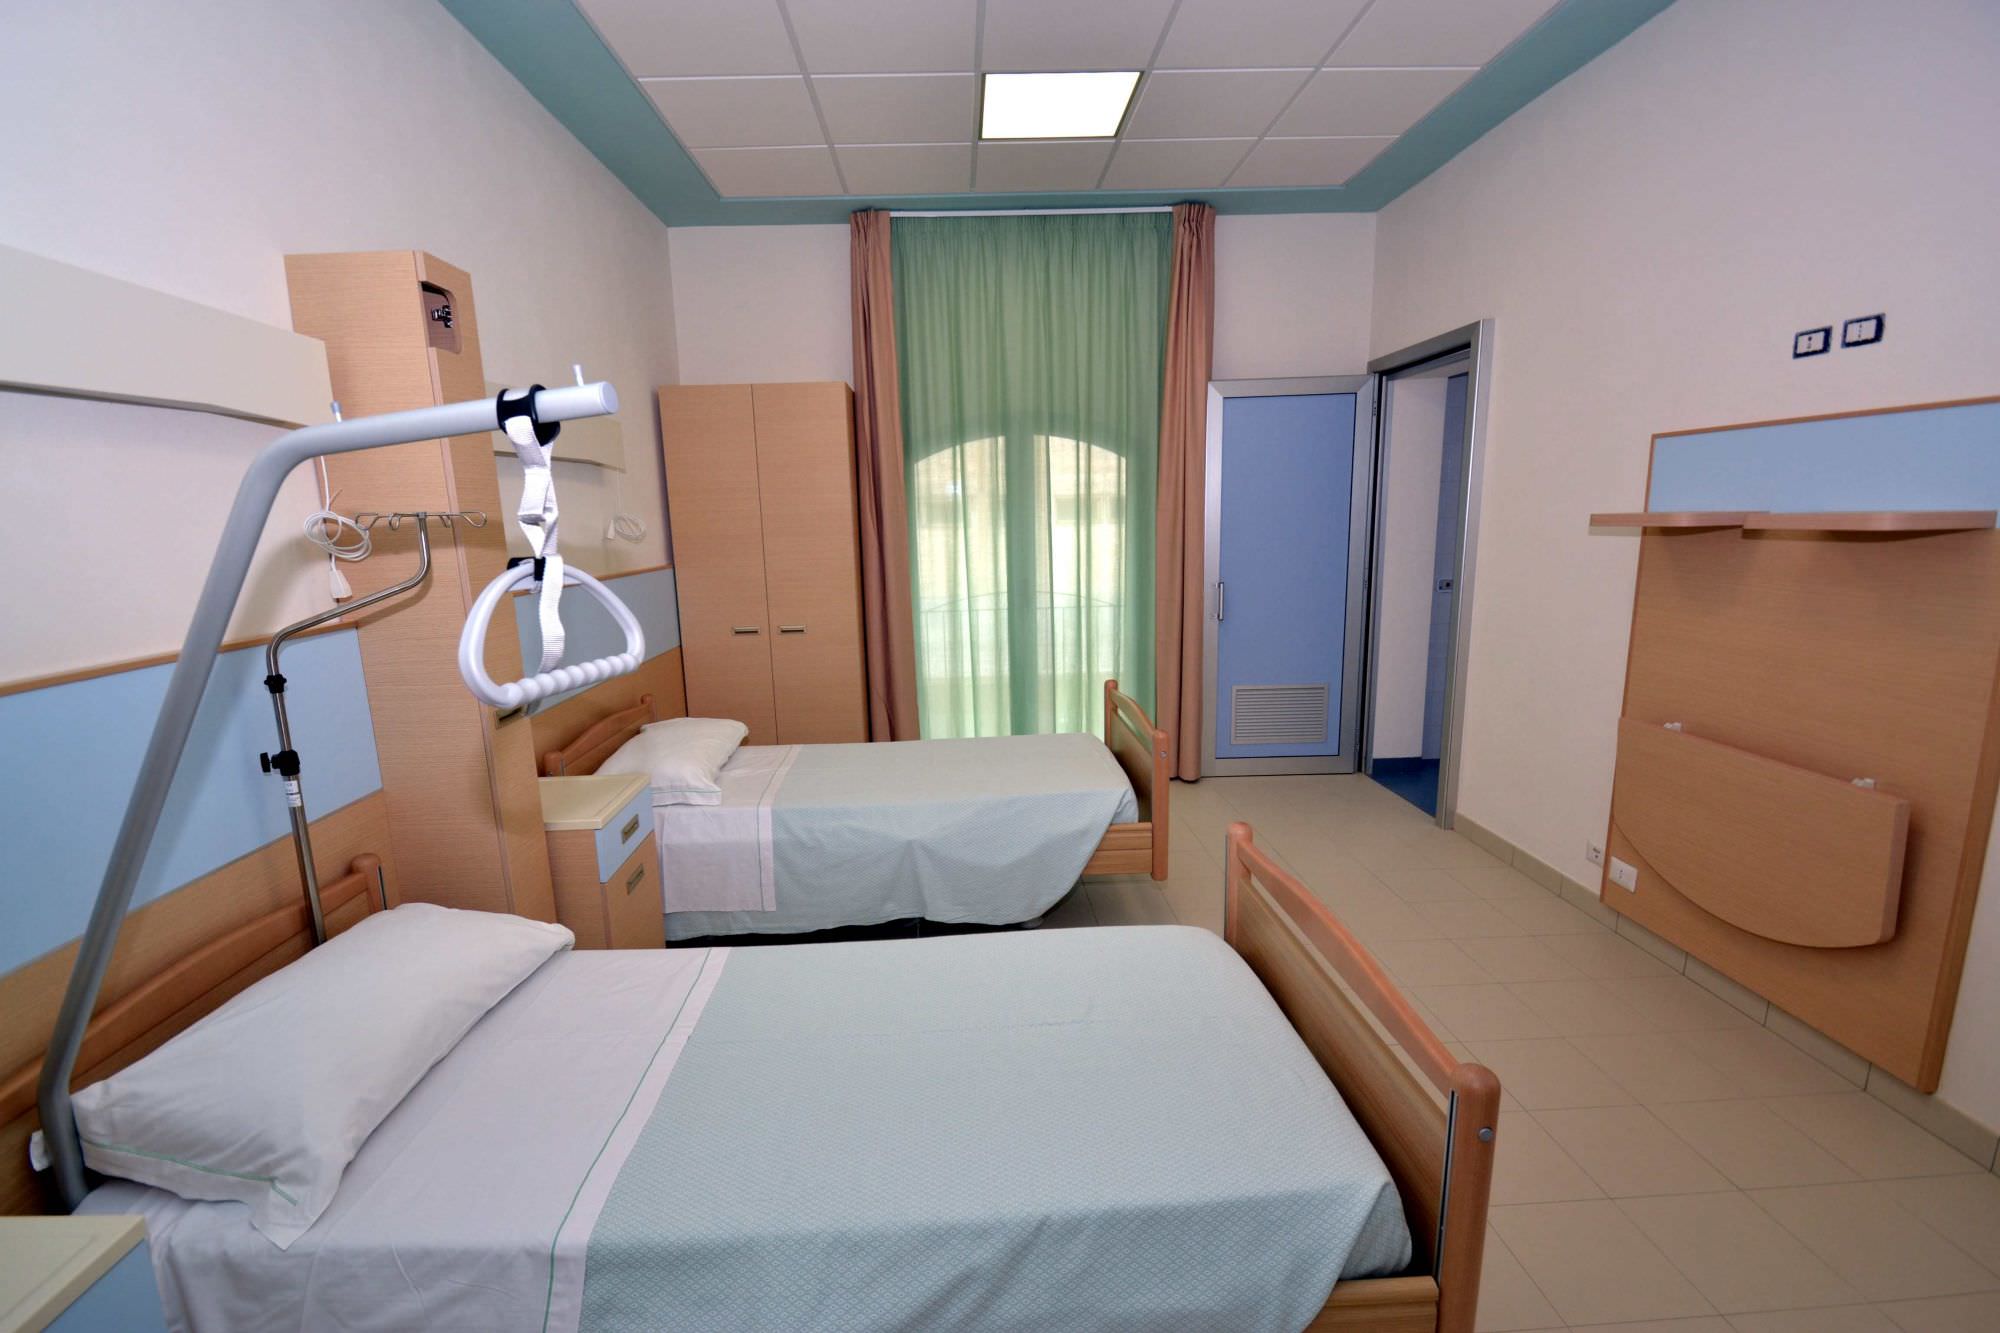 In un depliant le 14 Residenze Sanitarie Assistenziali della Versilia